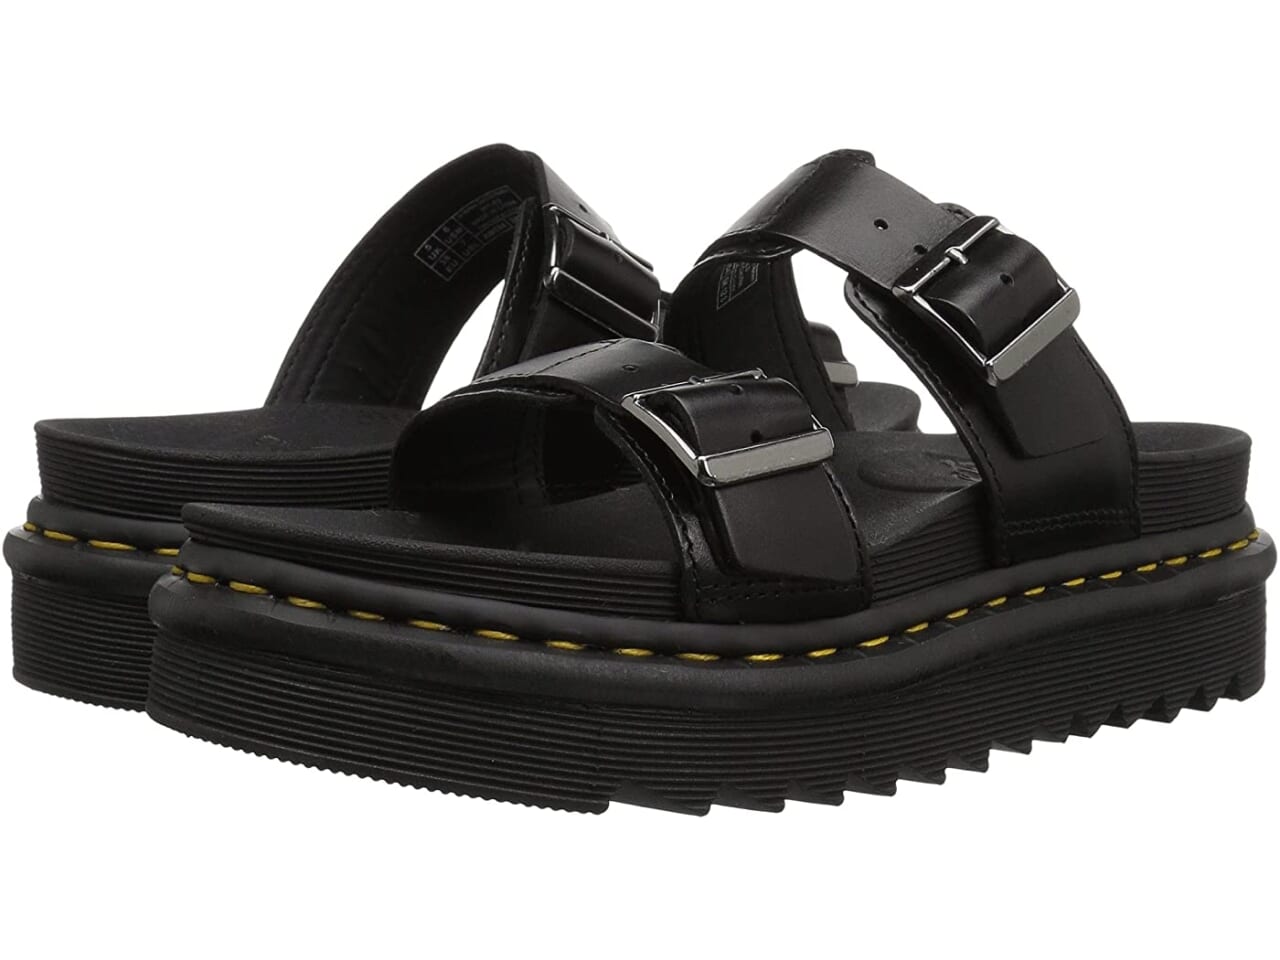 summer sandal trends 2021